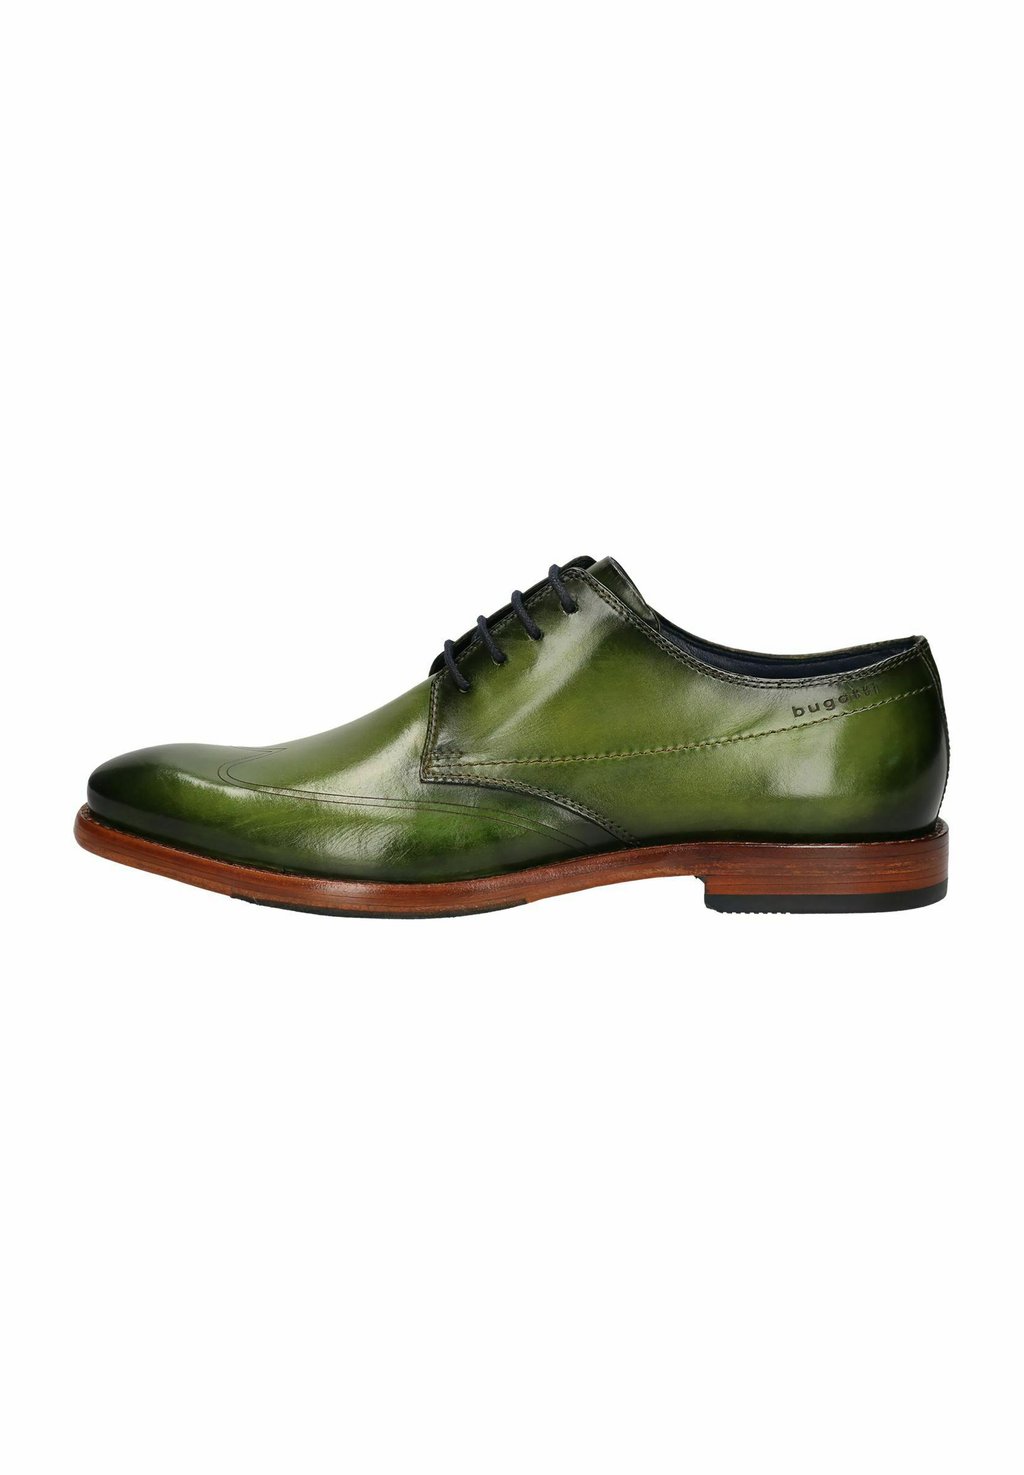 Деловые туфли на шнуровке MANSARO bugatti, цвет grün деловые туфли на шнуровке bugatti цвет black